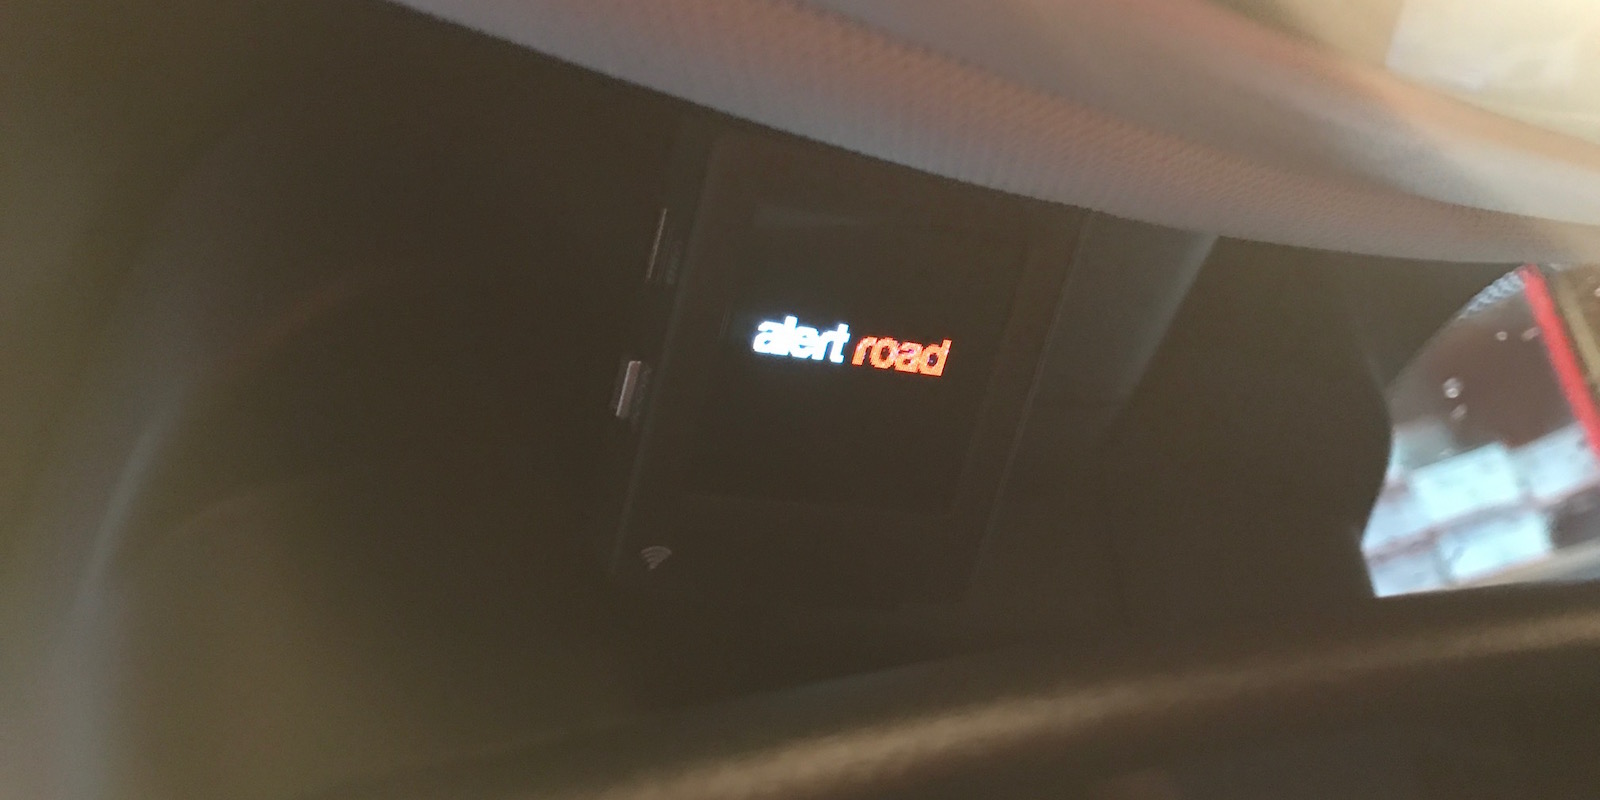 Display Alert Road